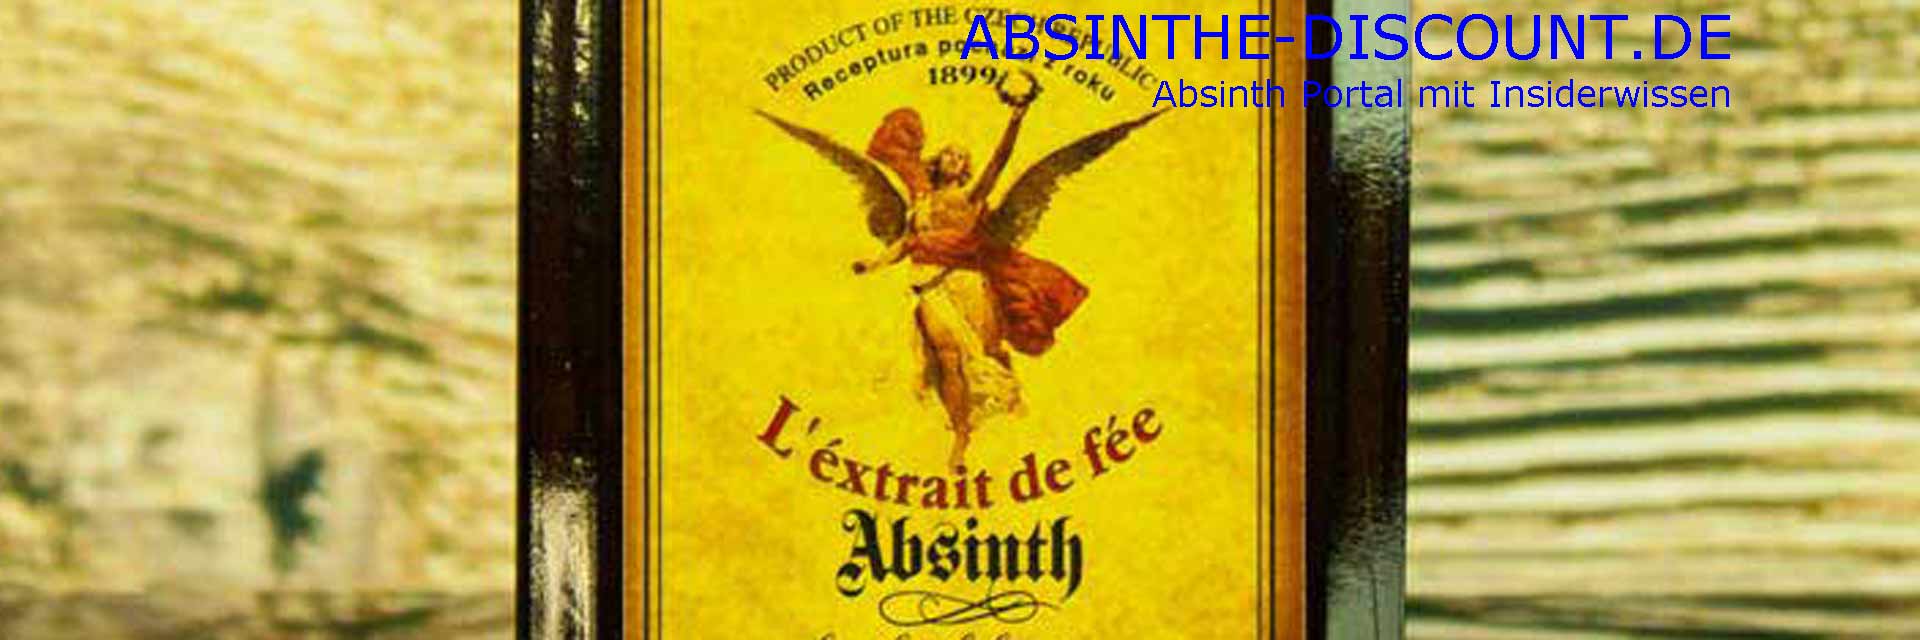 Absinthe-Discount Logobanner